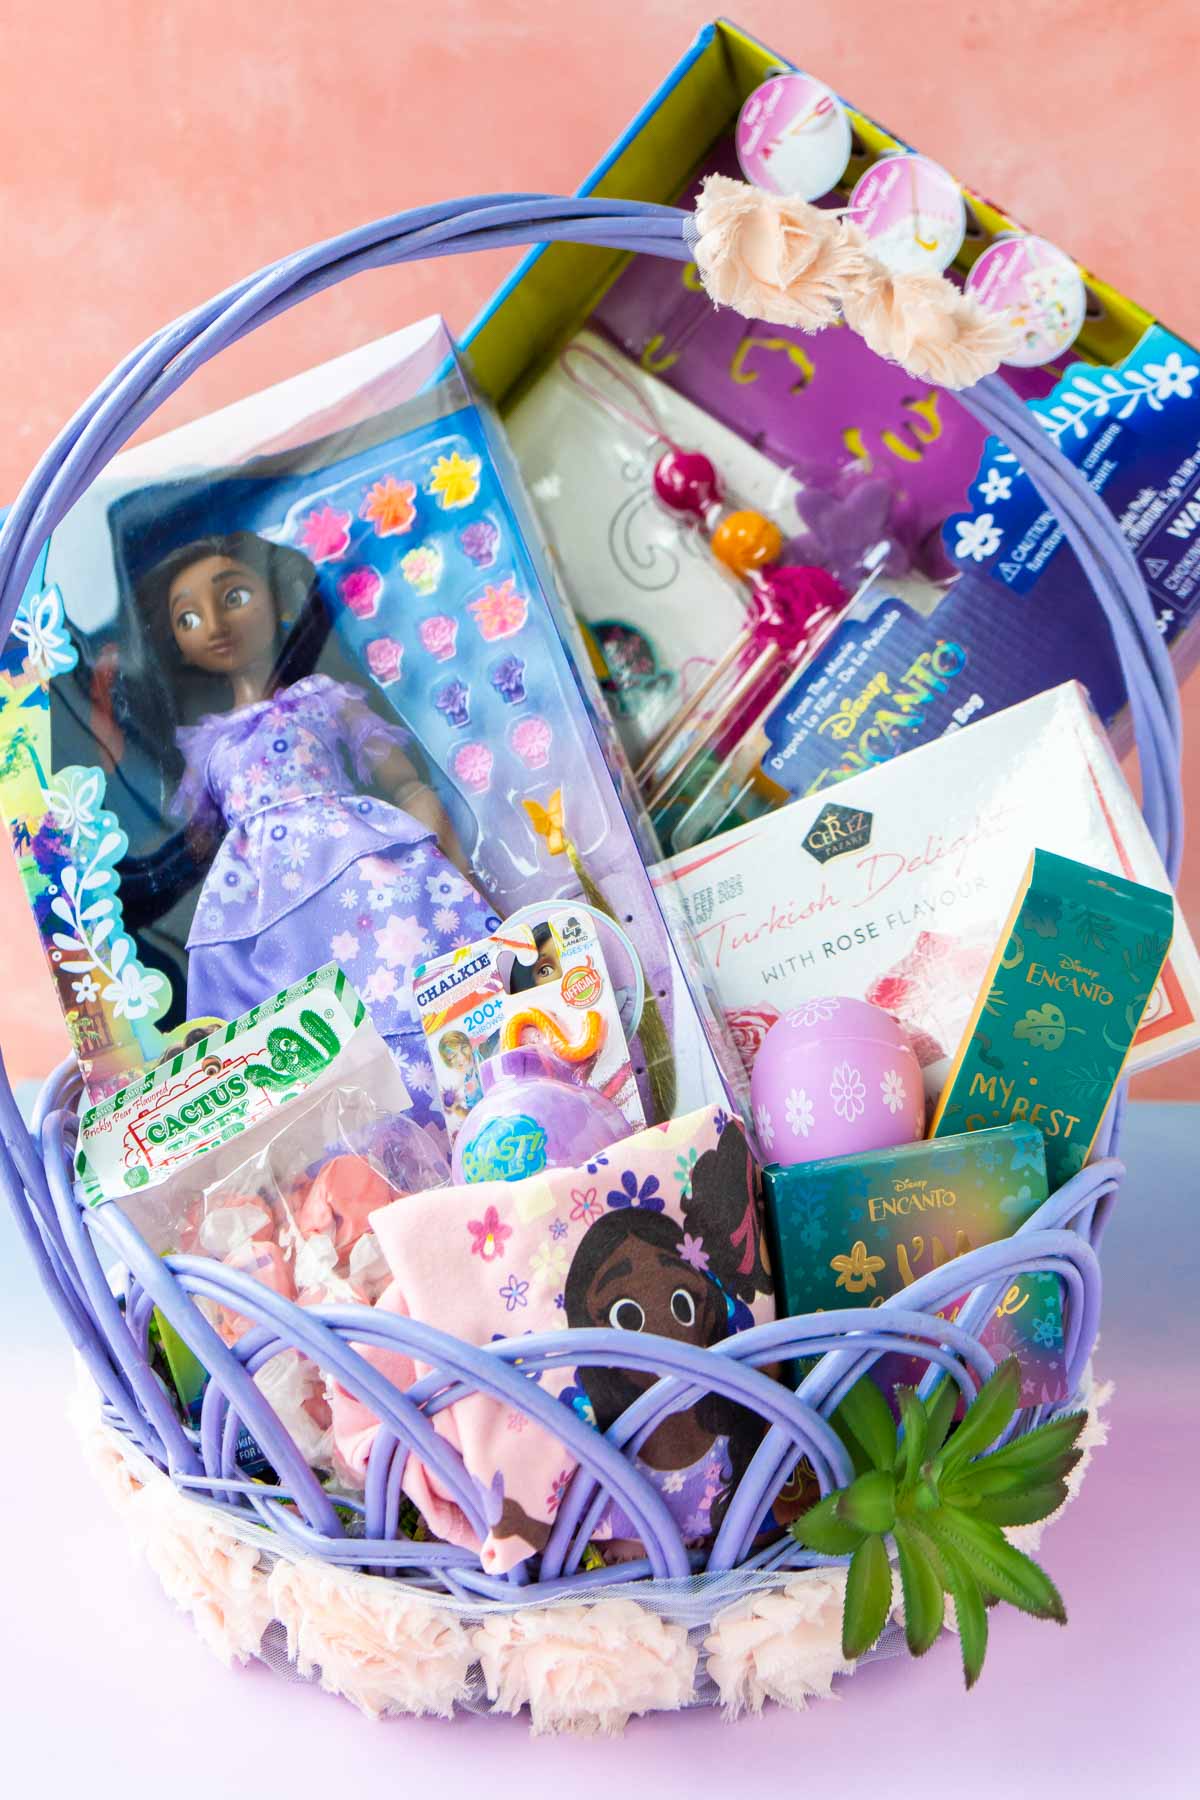 Isabela themed Easter basket from Encanto